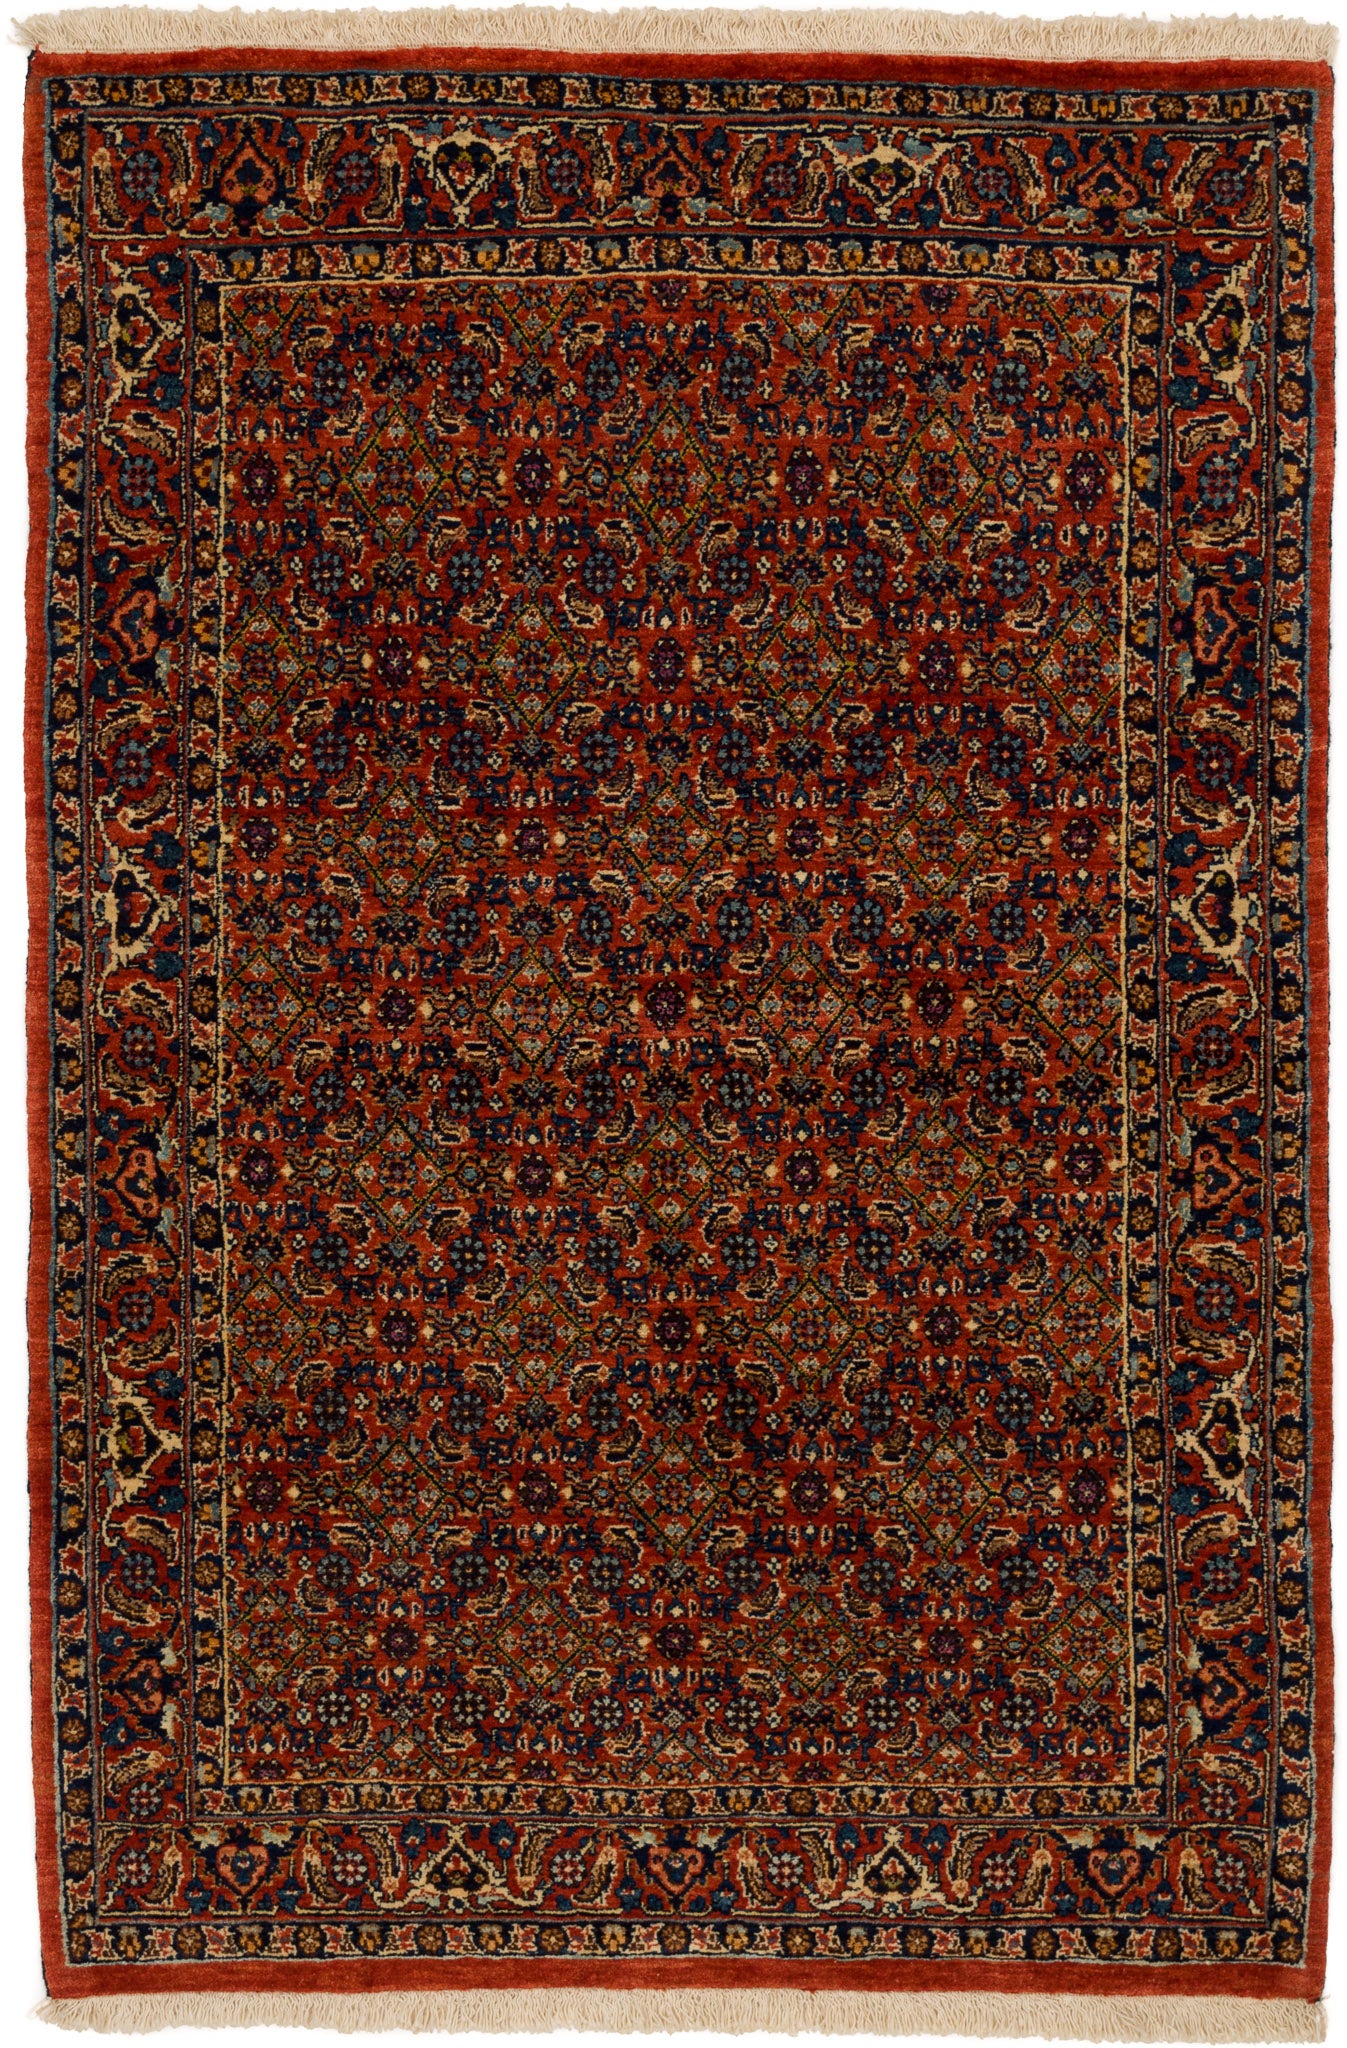 Bidjar Mirzai, 155 × 103 cm